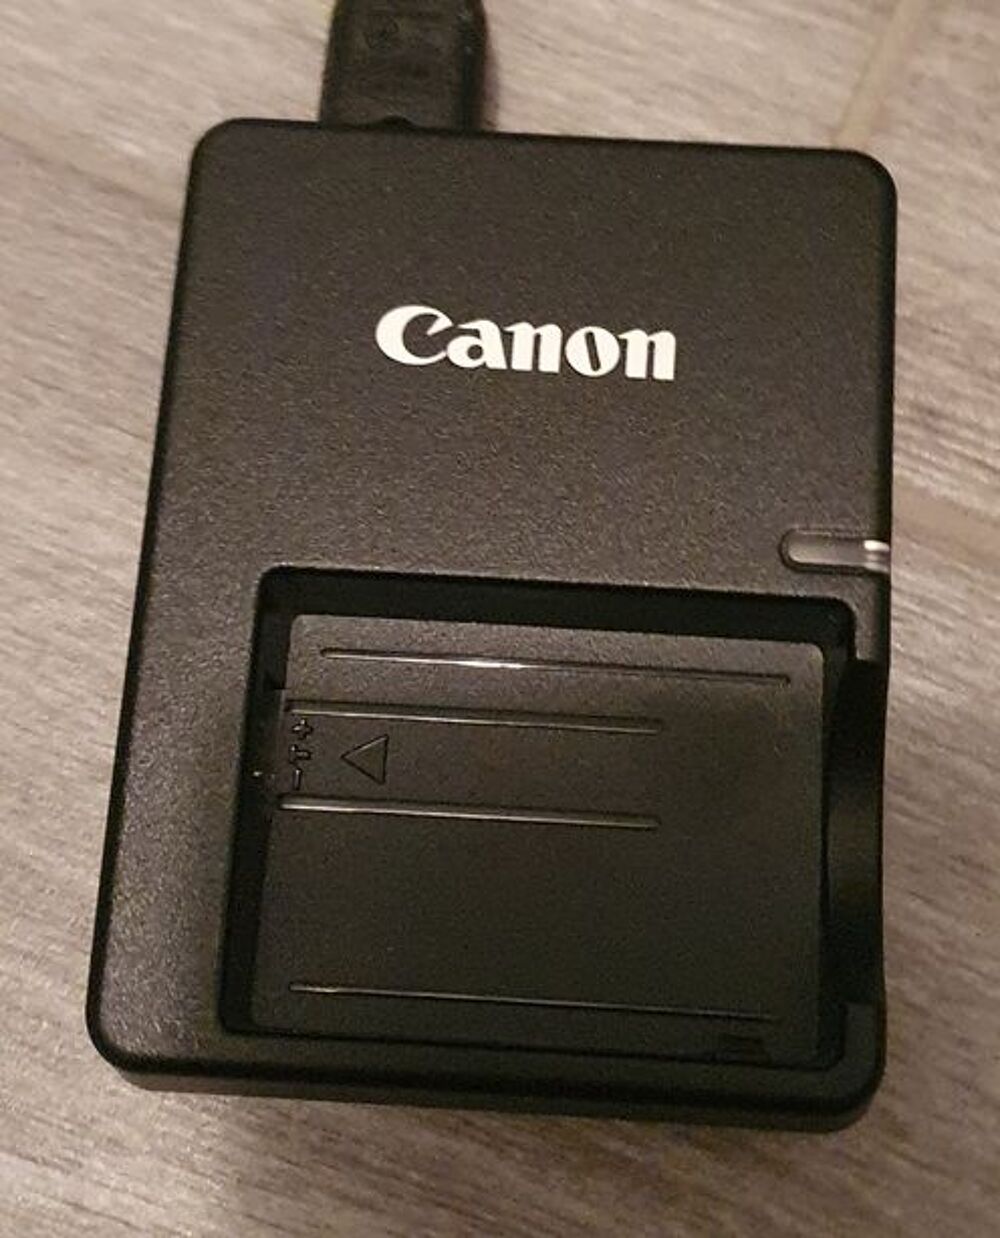 Chargeur CANON pour batterie LP-E5 Photos/Video/TV